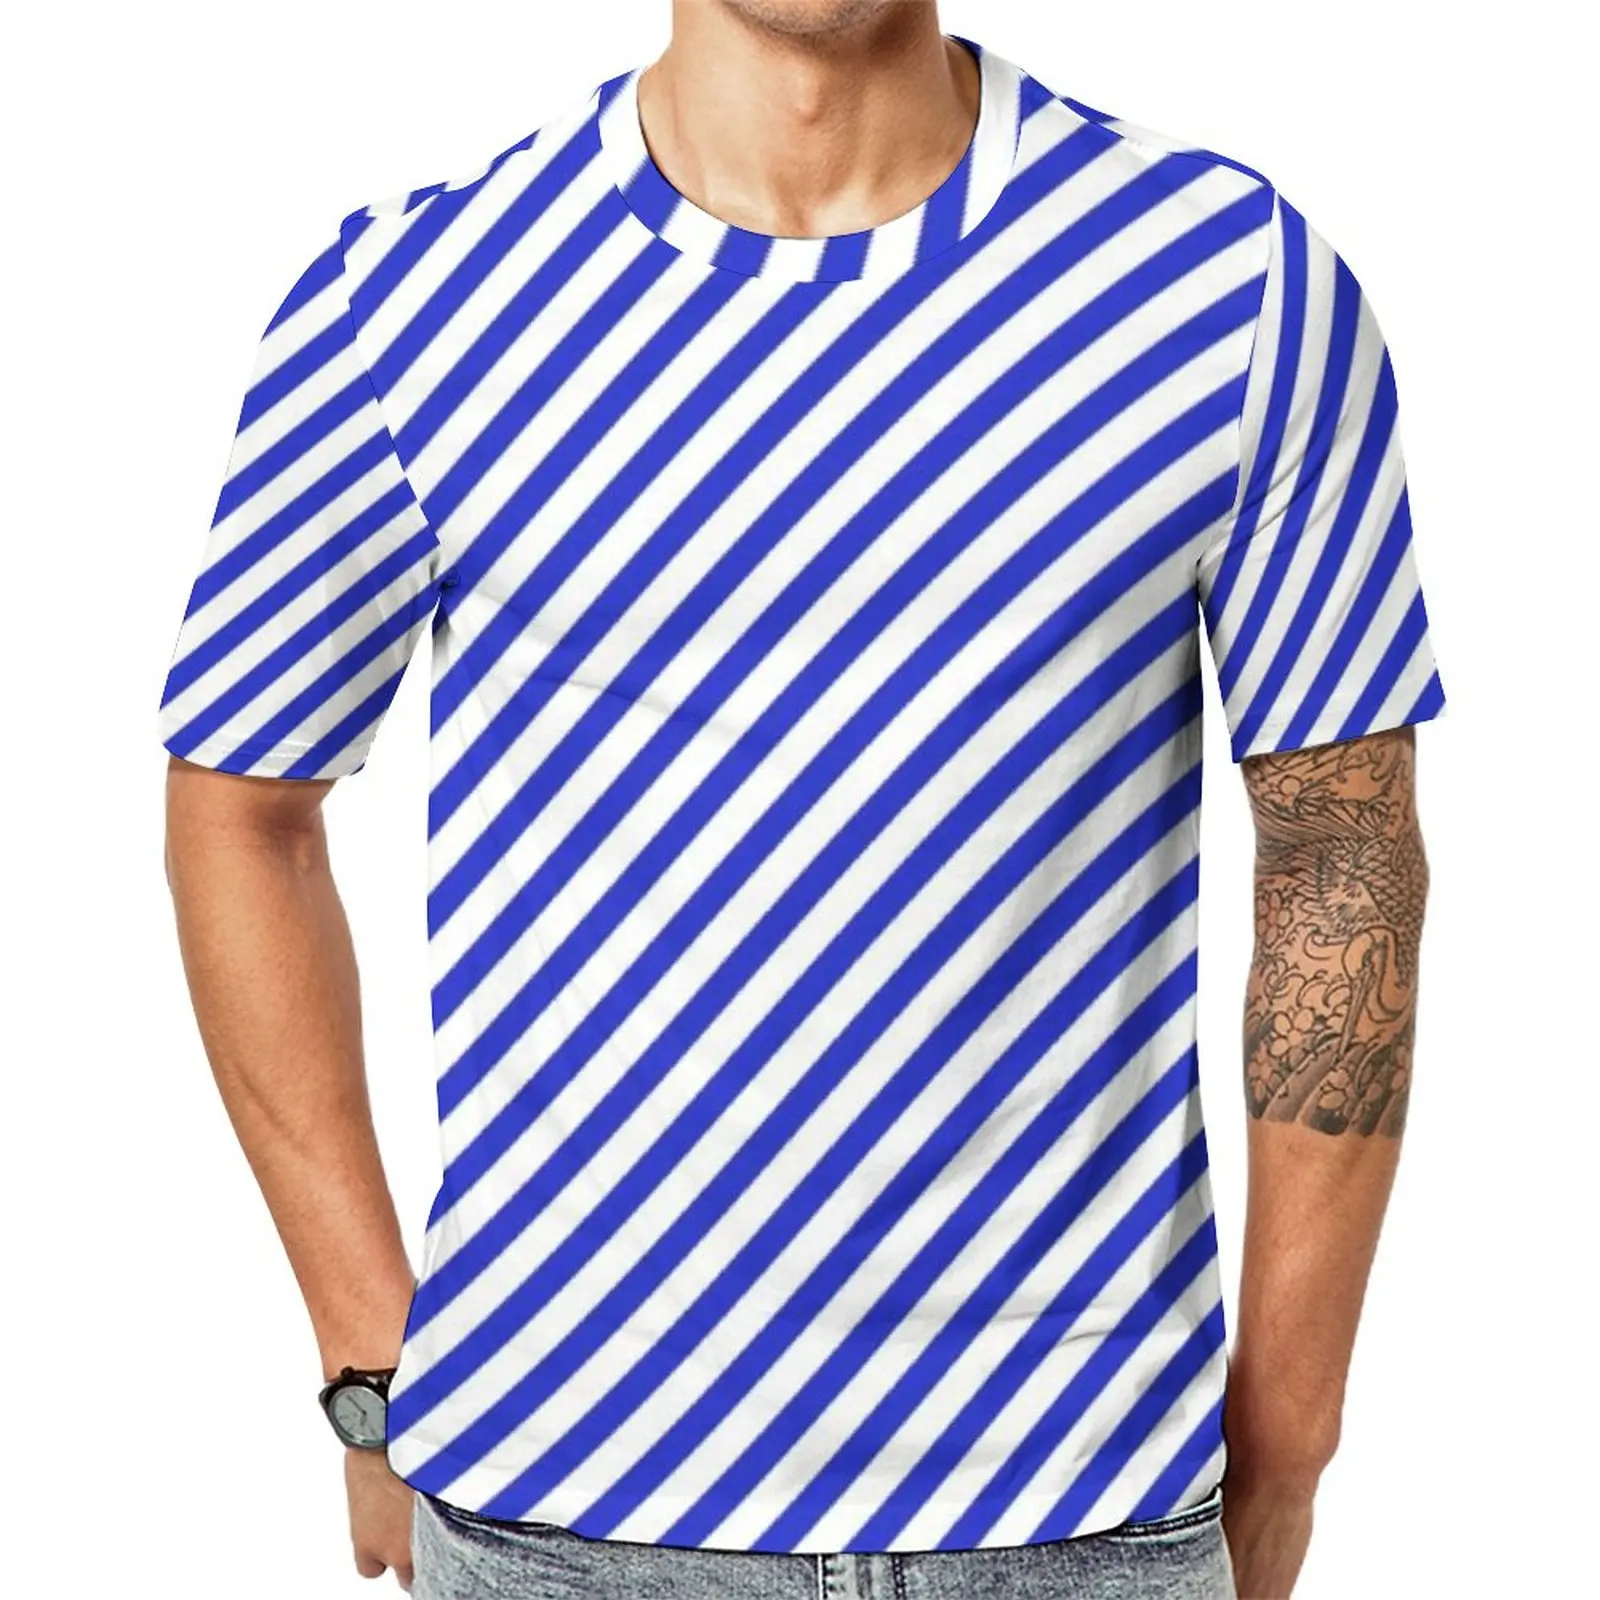 

Футболка мужская в диагональную полоску, стильная рубашка в стиле хиппи, с коротким рукавом, в синюю и белую полоску, в уличном стиле